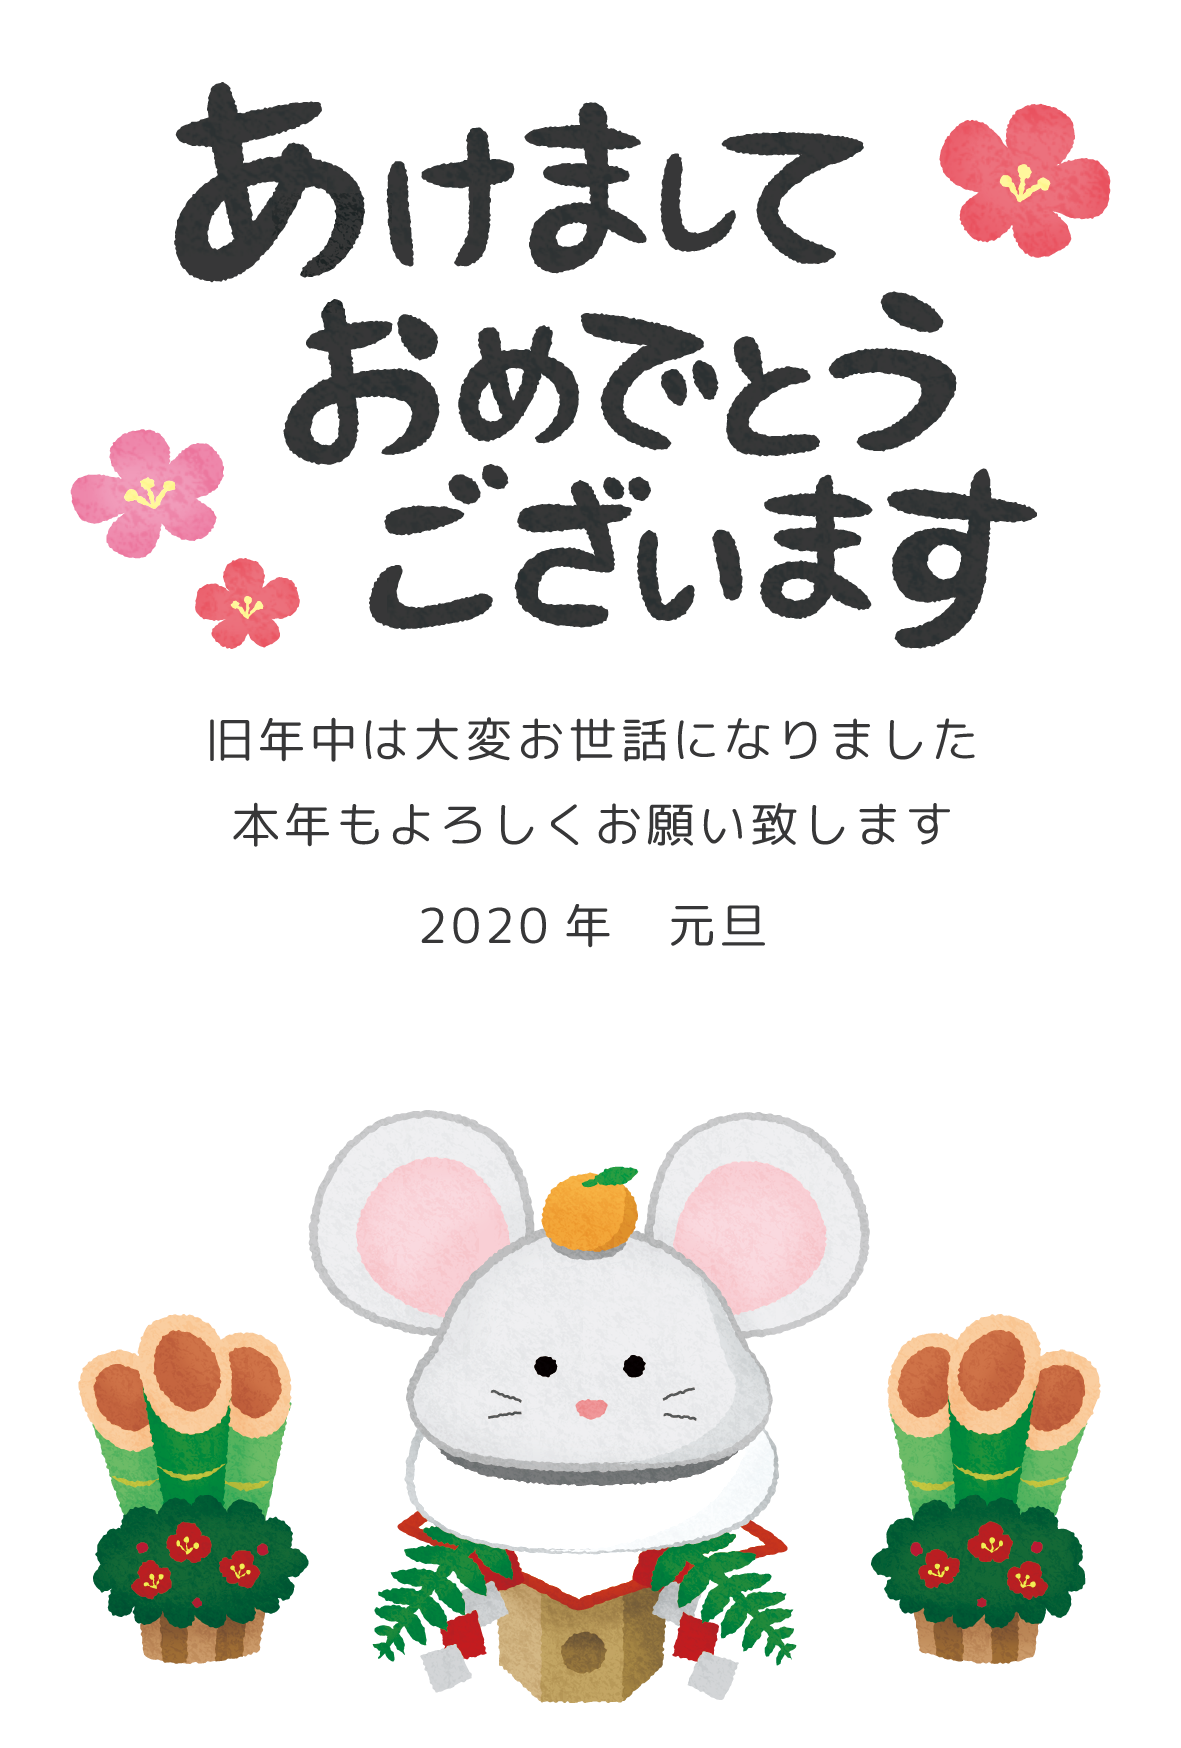 Plantilla de Tarjeta de Año Nuevo gratis (Rata kagami mochi)  02